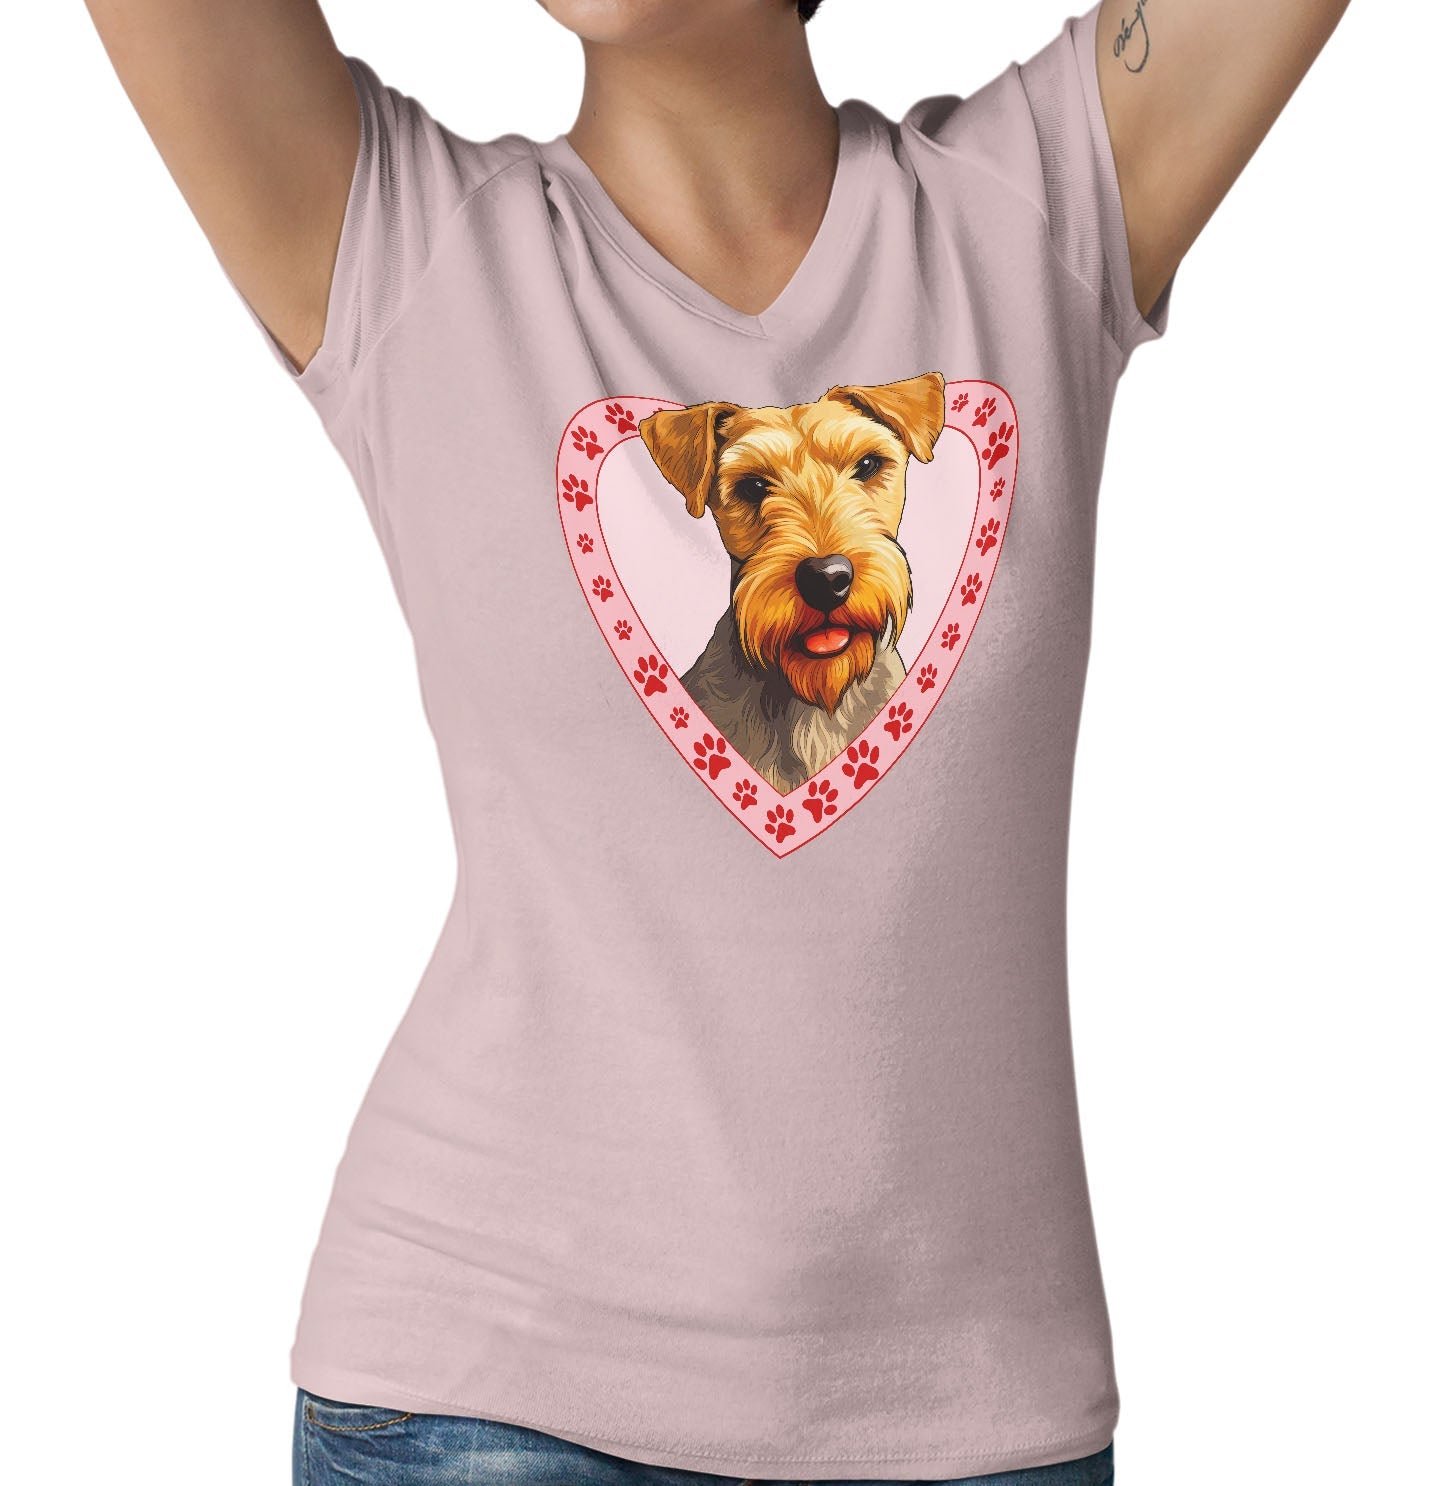 Lakeland Terrier Illustration In Heart - Women's V-Neck T-Shirt